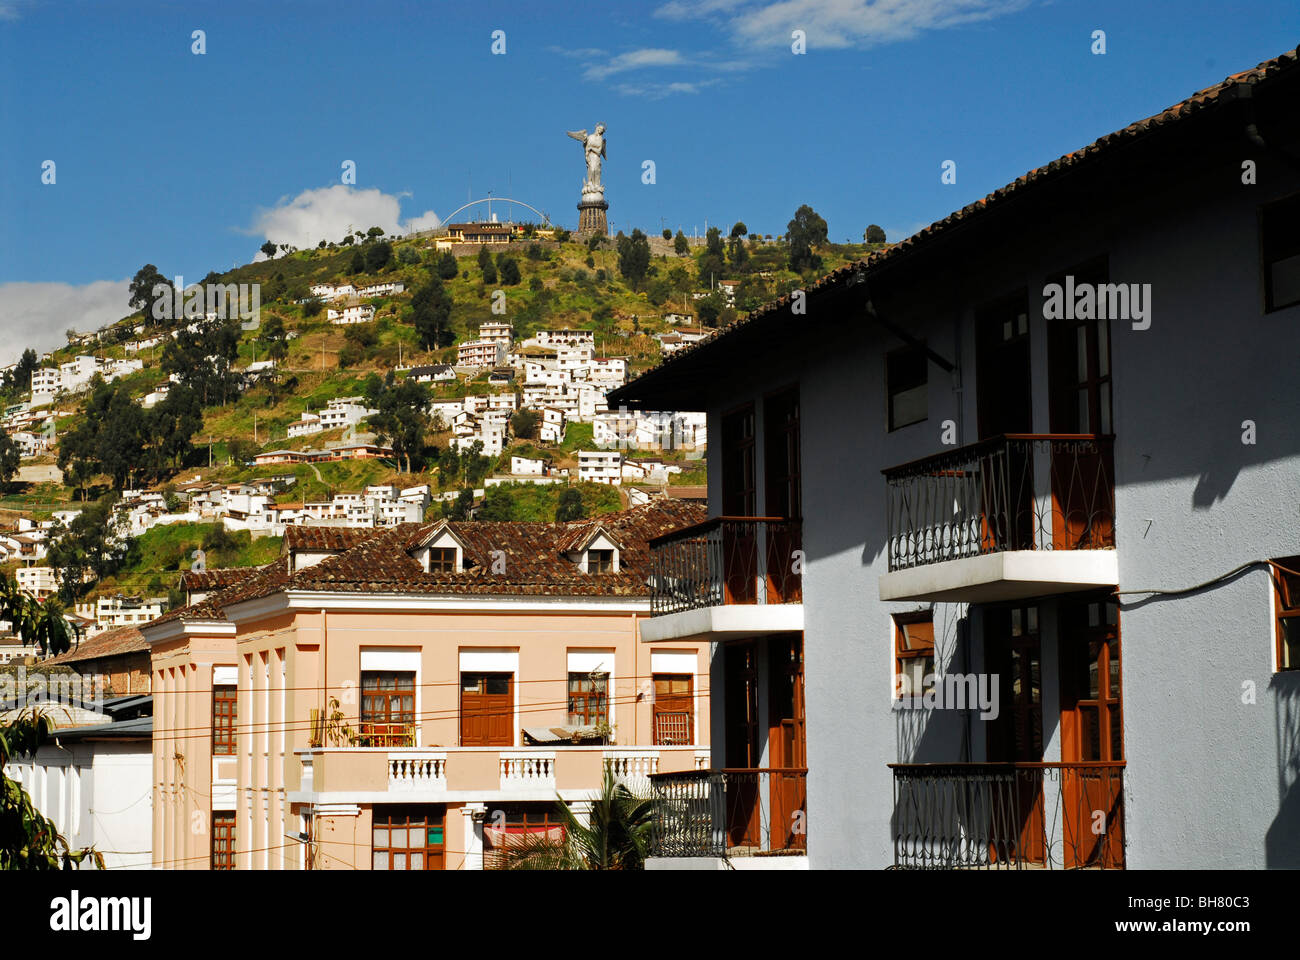 Equador, Quito Quito la Madonna a basso angolo di visione di un bianco coloniale casa residenziale, con la gente che camminava sul marciapiede, Foto Stock